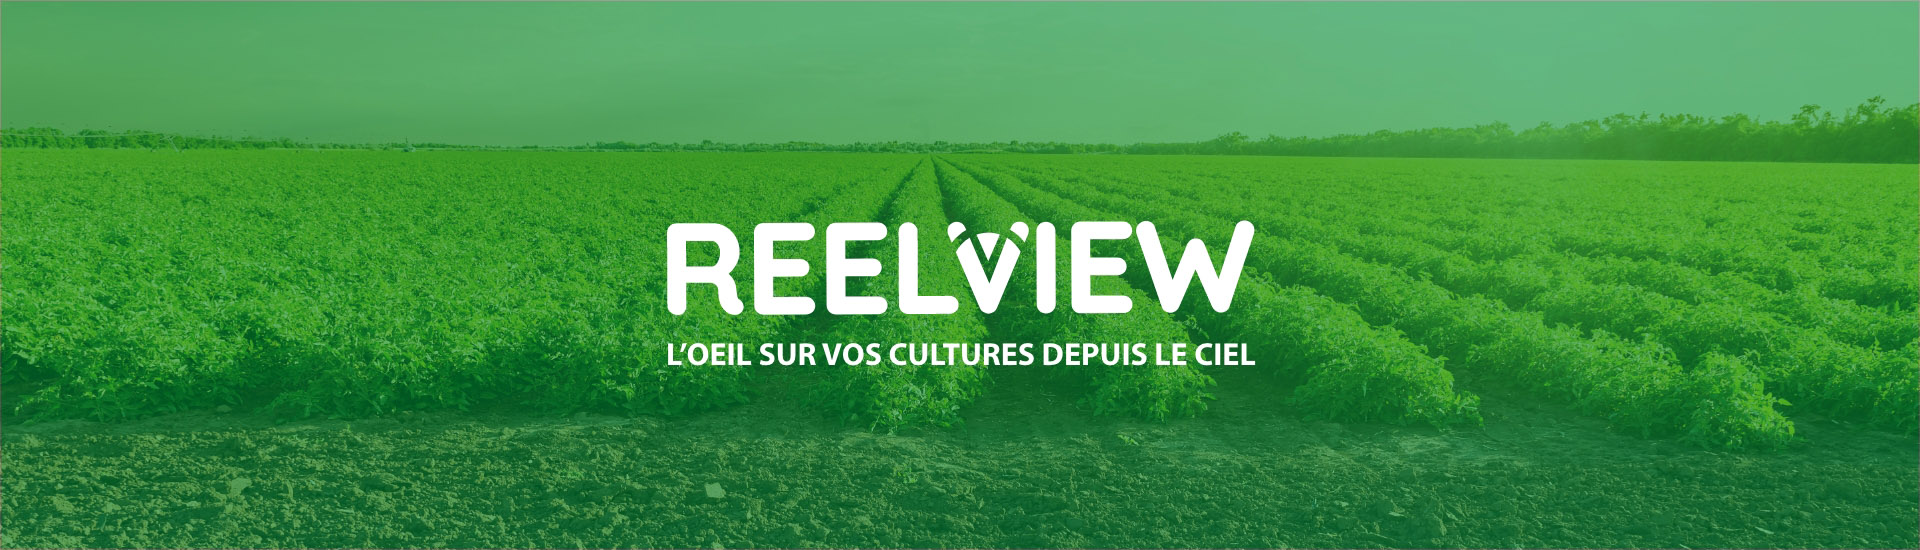 Rivulis offre un service gratuit à ses clients agriculteurs pour la surveillance des cultures et la détection des problèmes d’irrigation grâce à l’imagerie satellite.